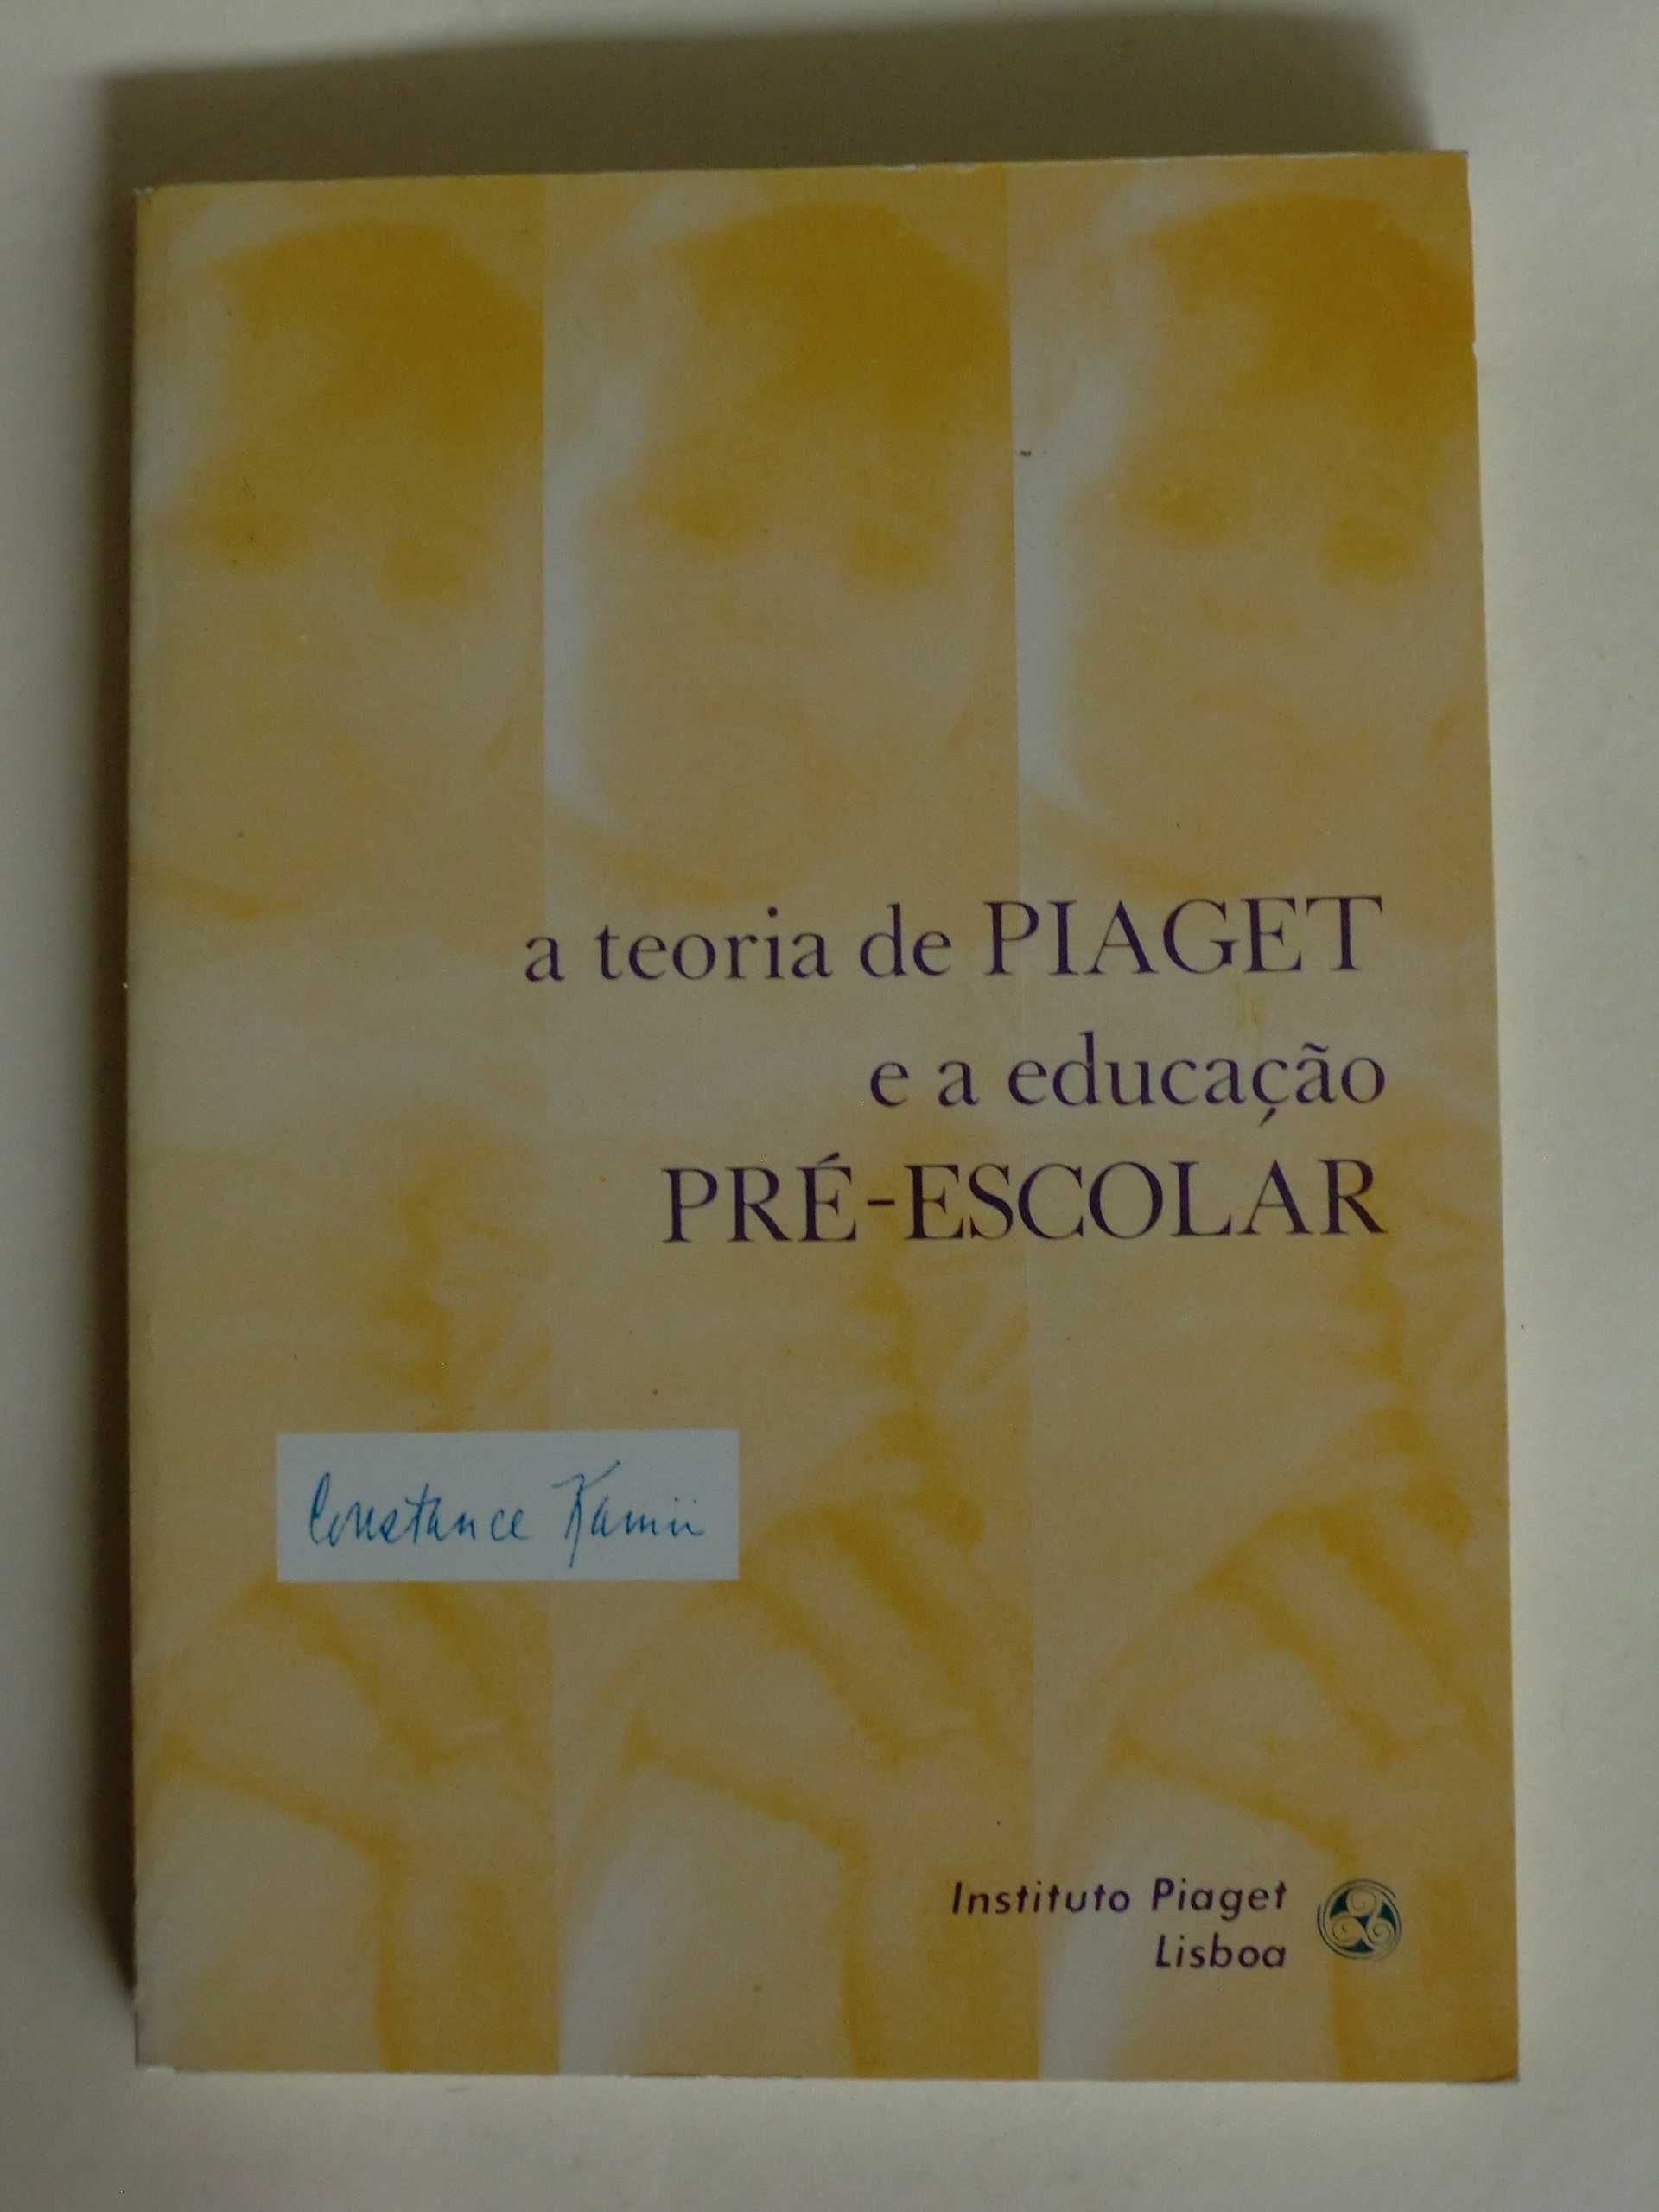 A Teoria de Piaget e a Educação Pré-Escolar
de Constance Kamii